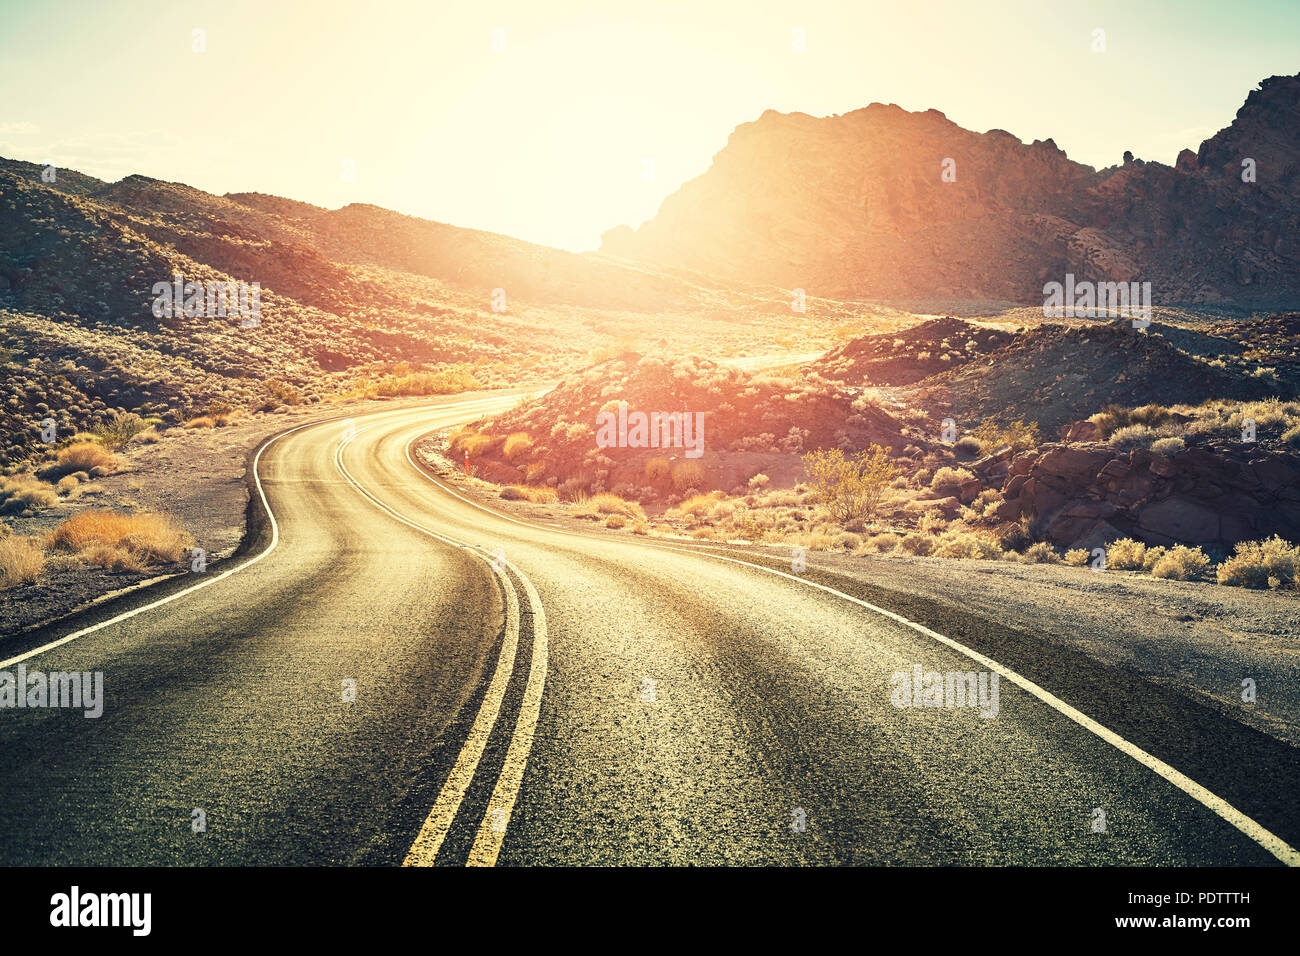 Tonos Retro escénica carretera del desierto al atardecer, concepto de viaje, USA. Foto de stock